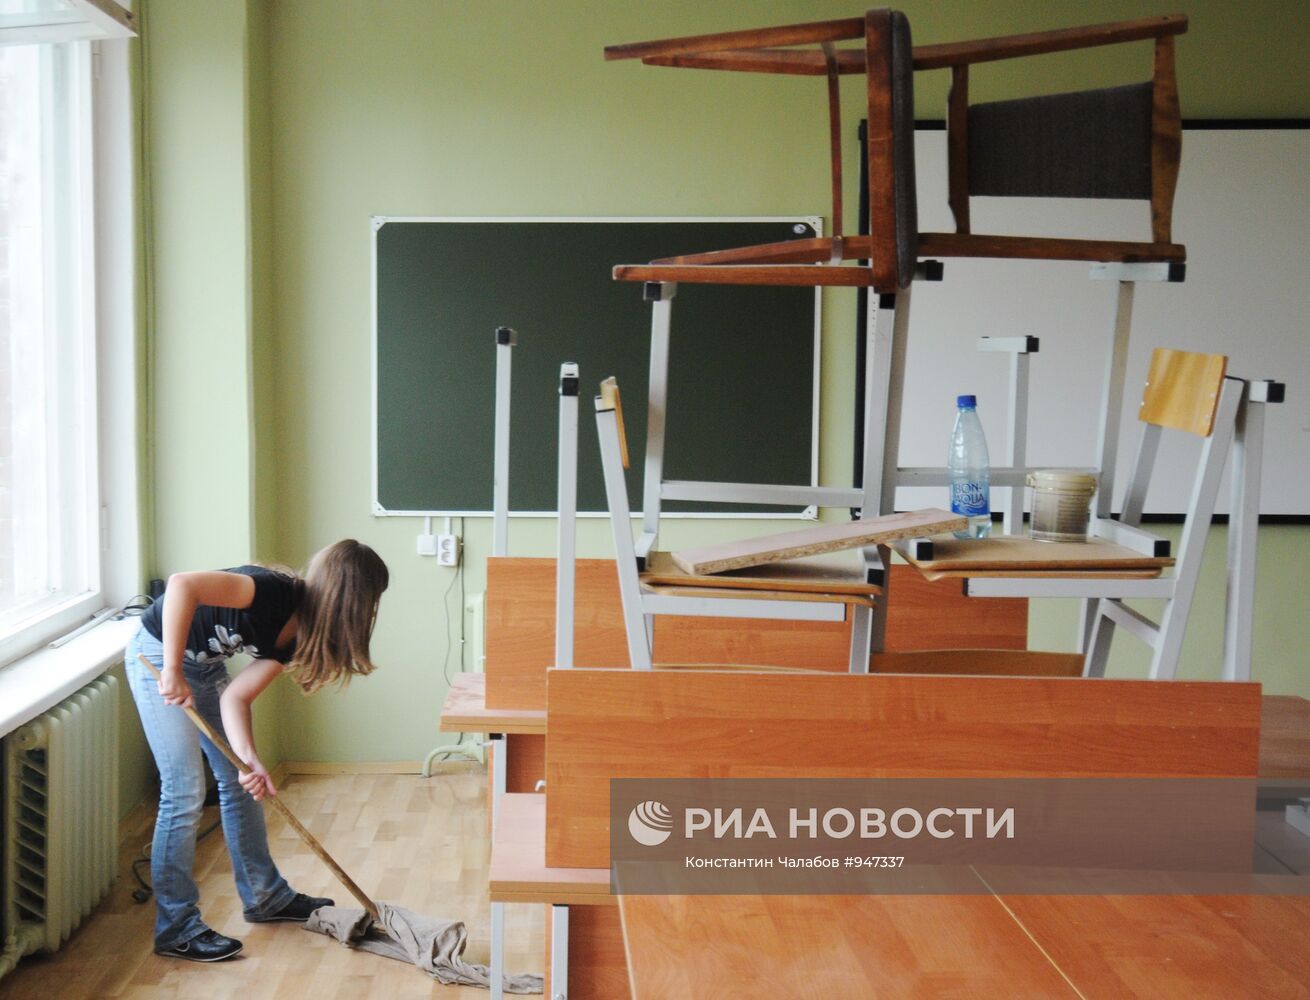 Подготовка к 1 сентября одной из школ в Великом Новгороде